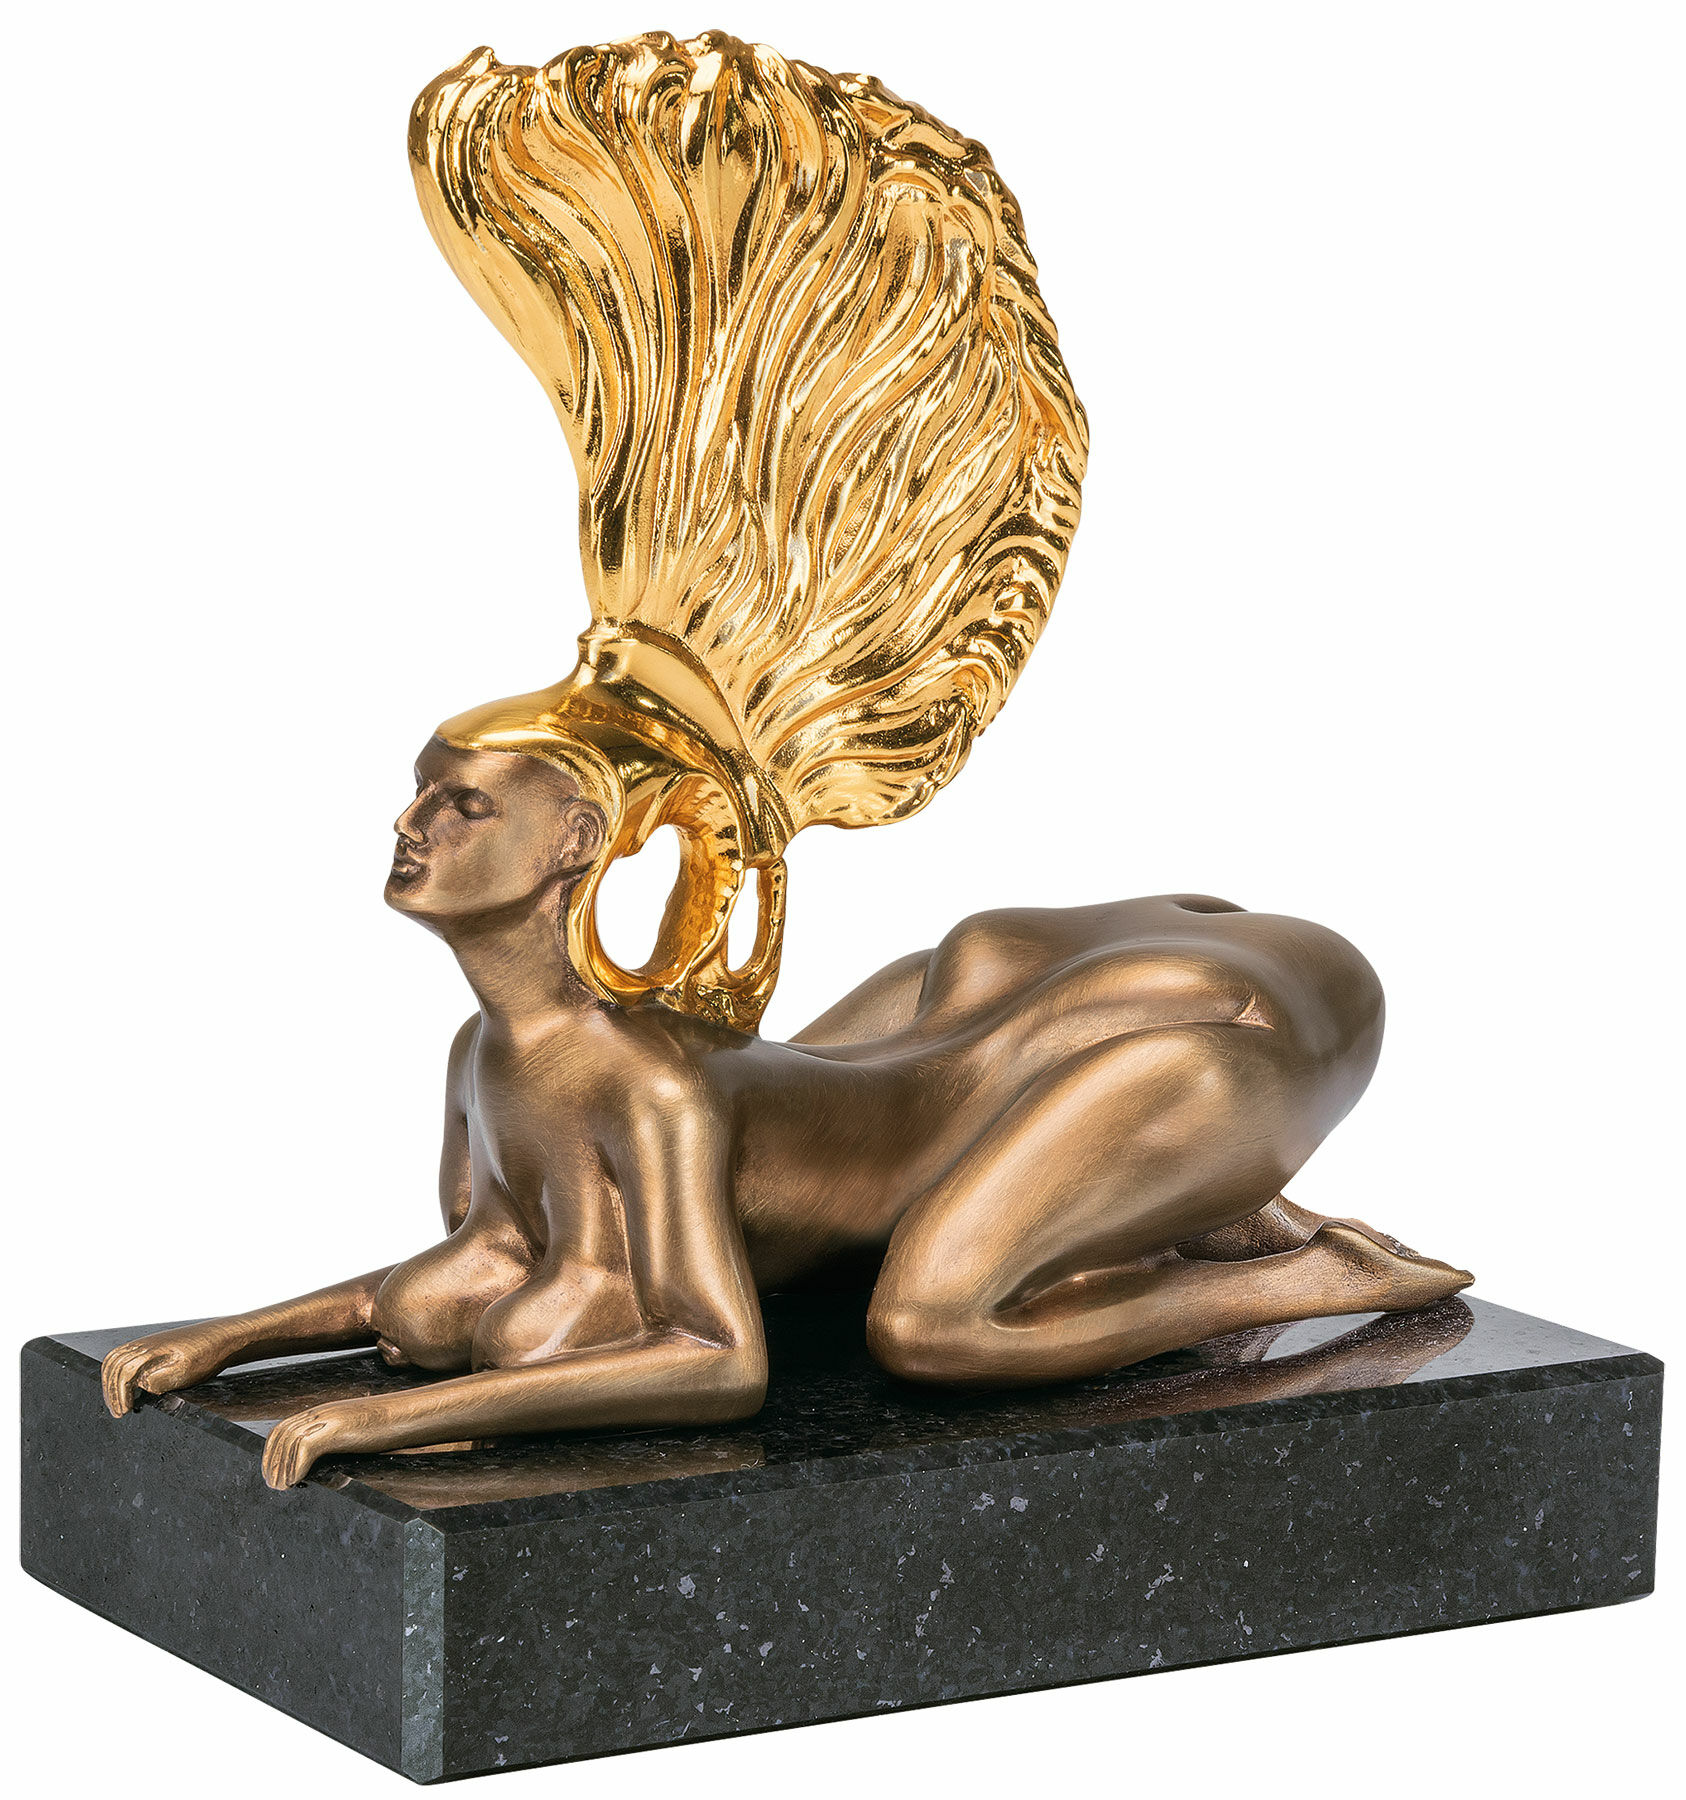 Sculptuur "De sfinx met de gouden helm - De miniatuur", brons gedeeltelijk verguld von Ernst Fuchs